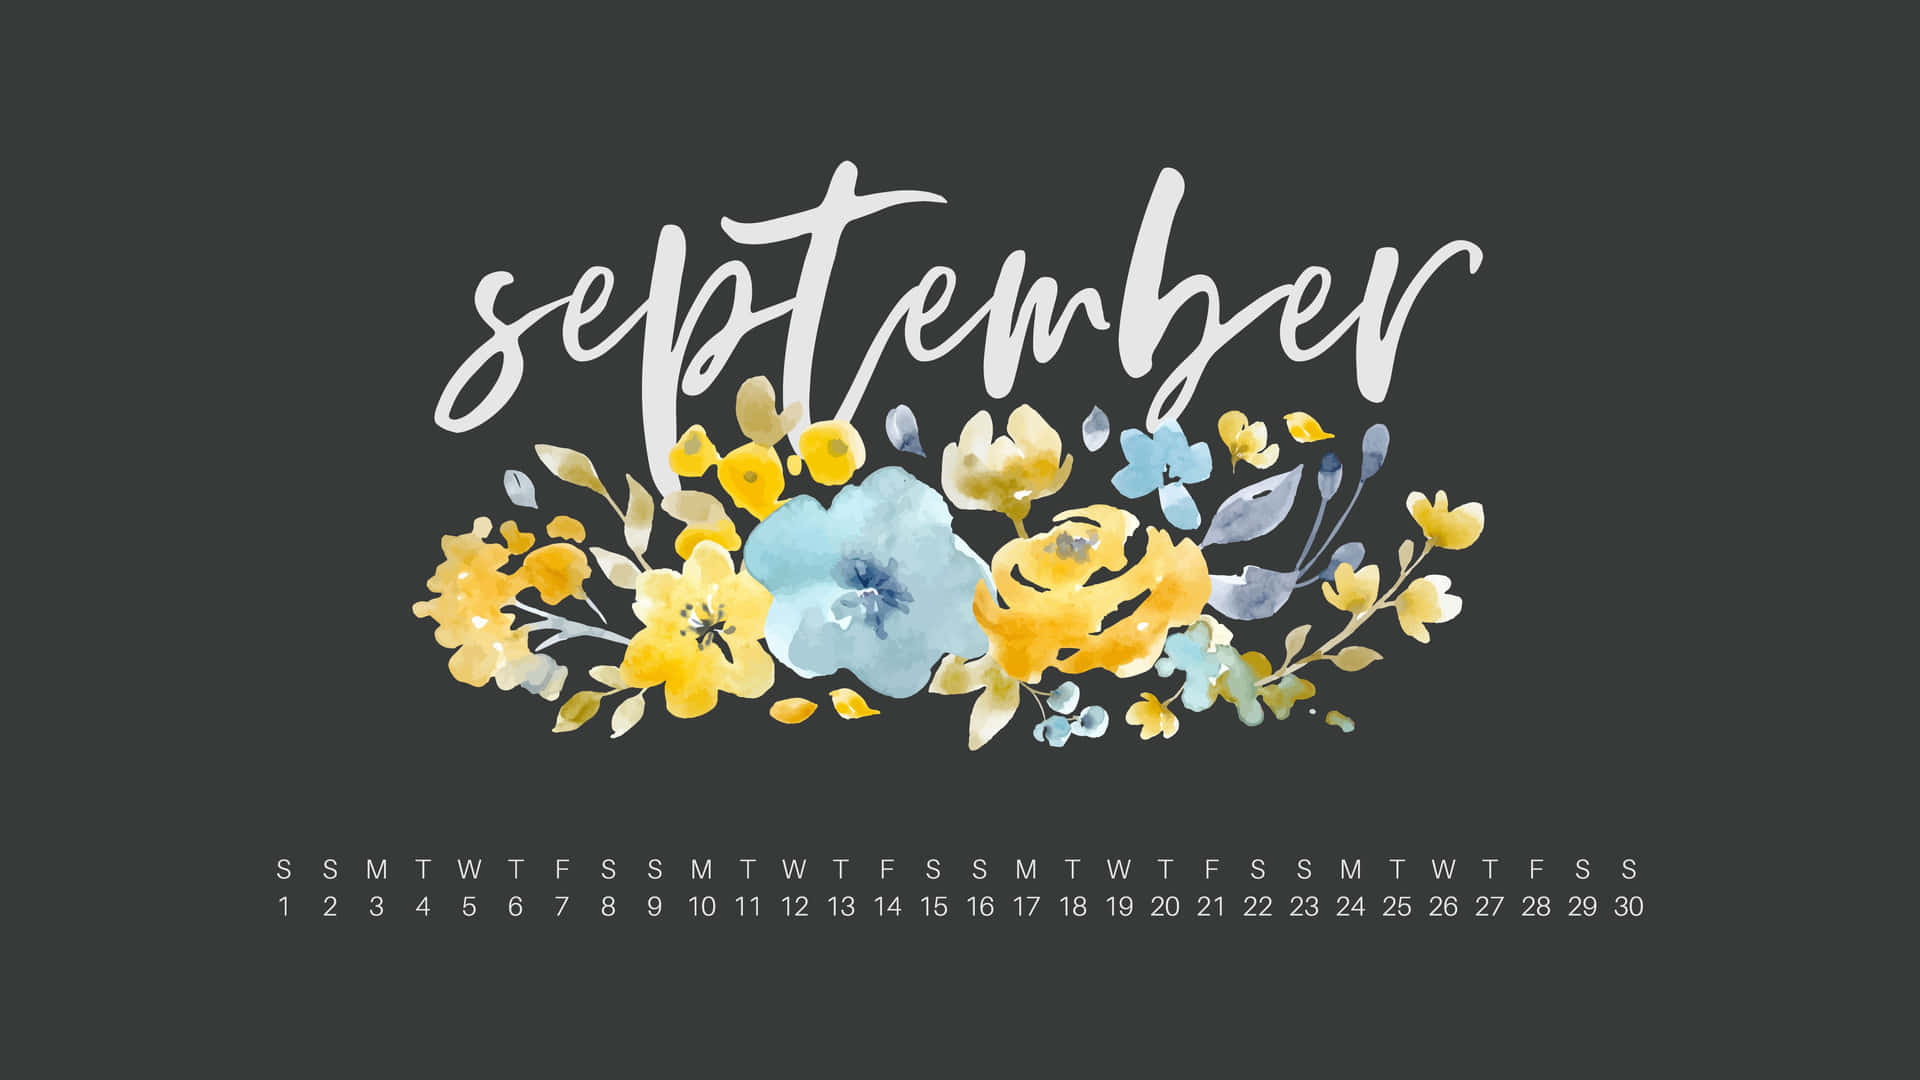 Feiernsie Den Monat September!